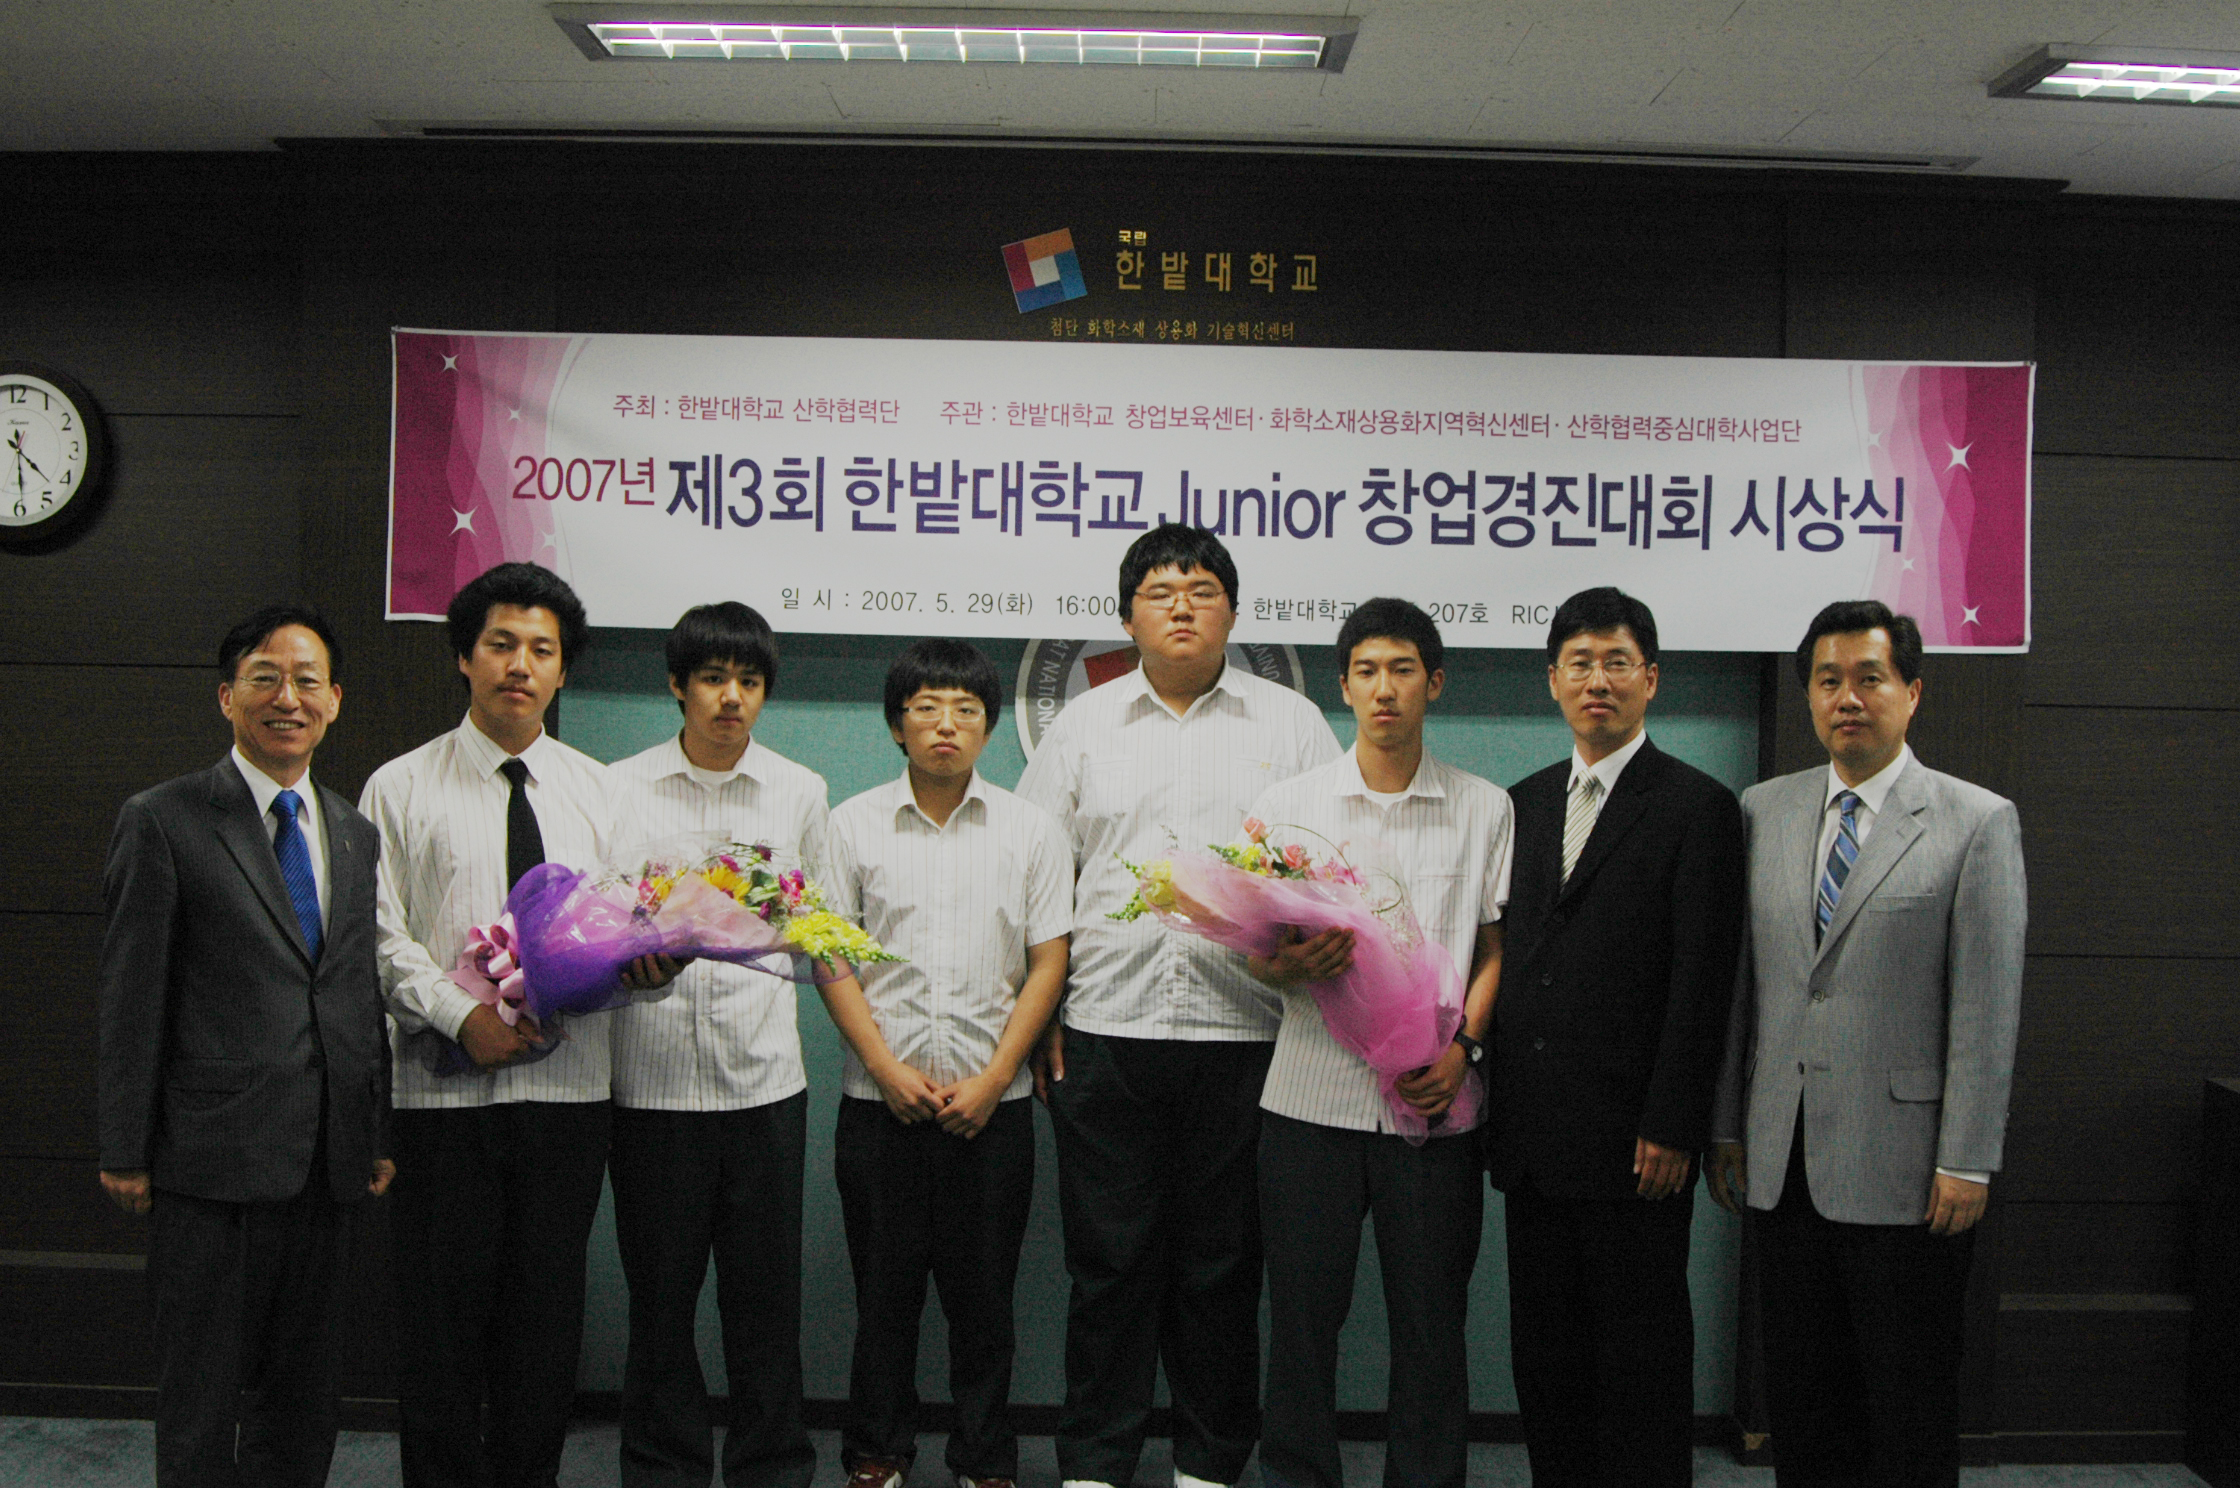 제3회 전국 Junior 창업아이템 경진대회 시상식